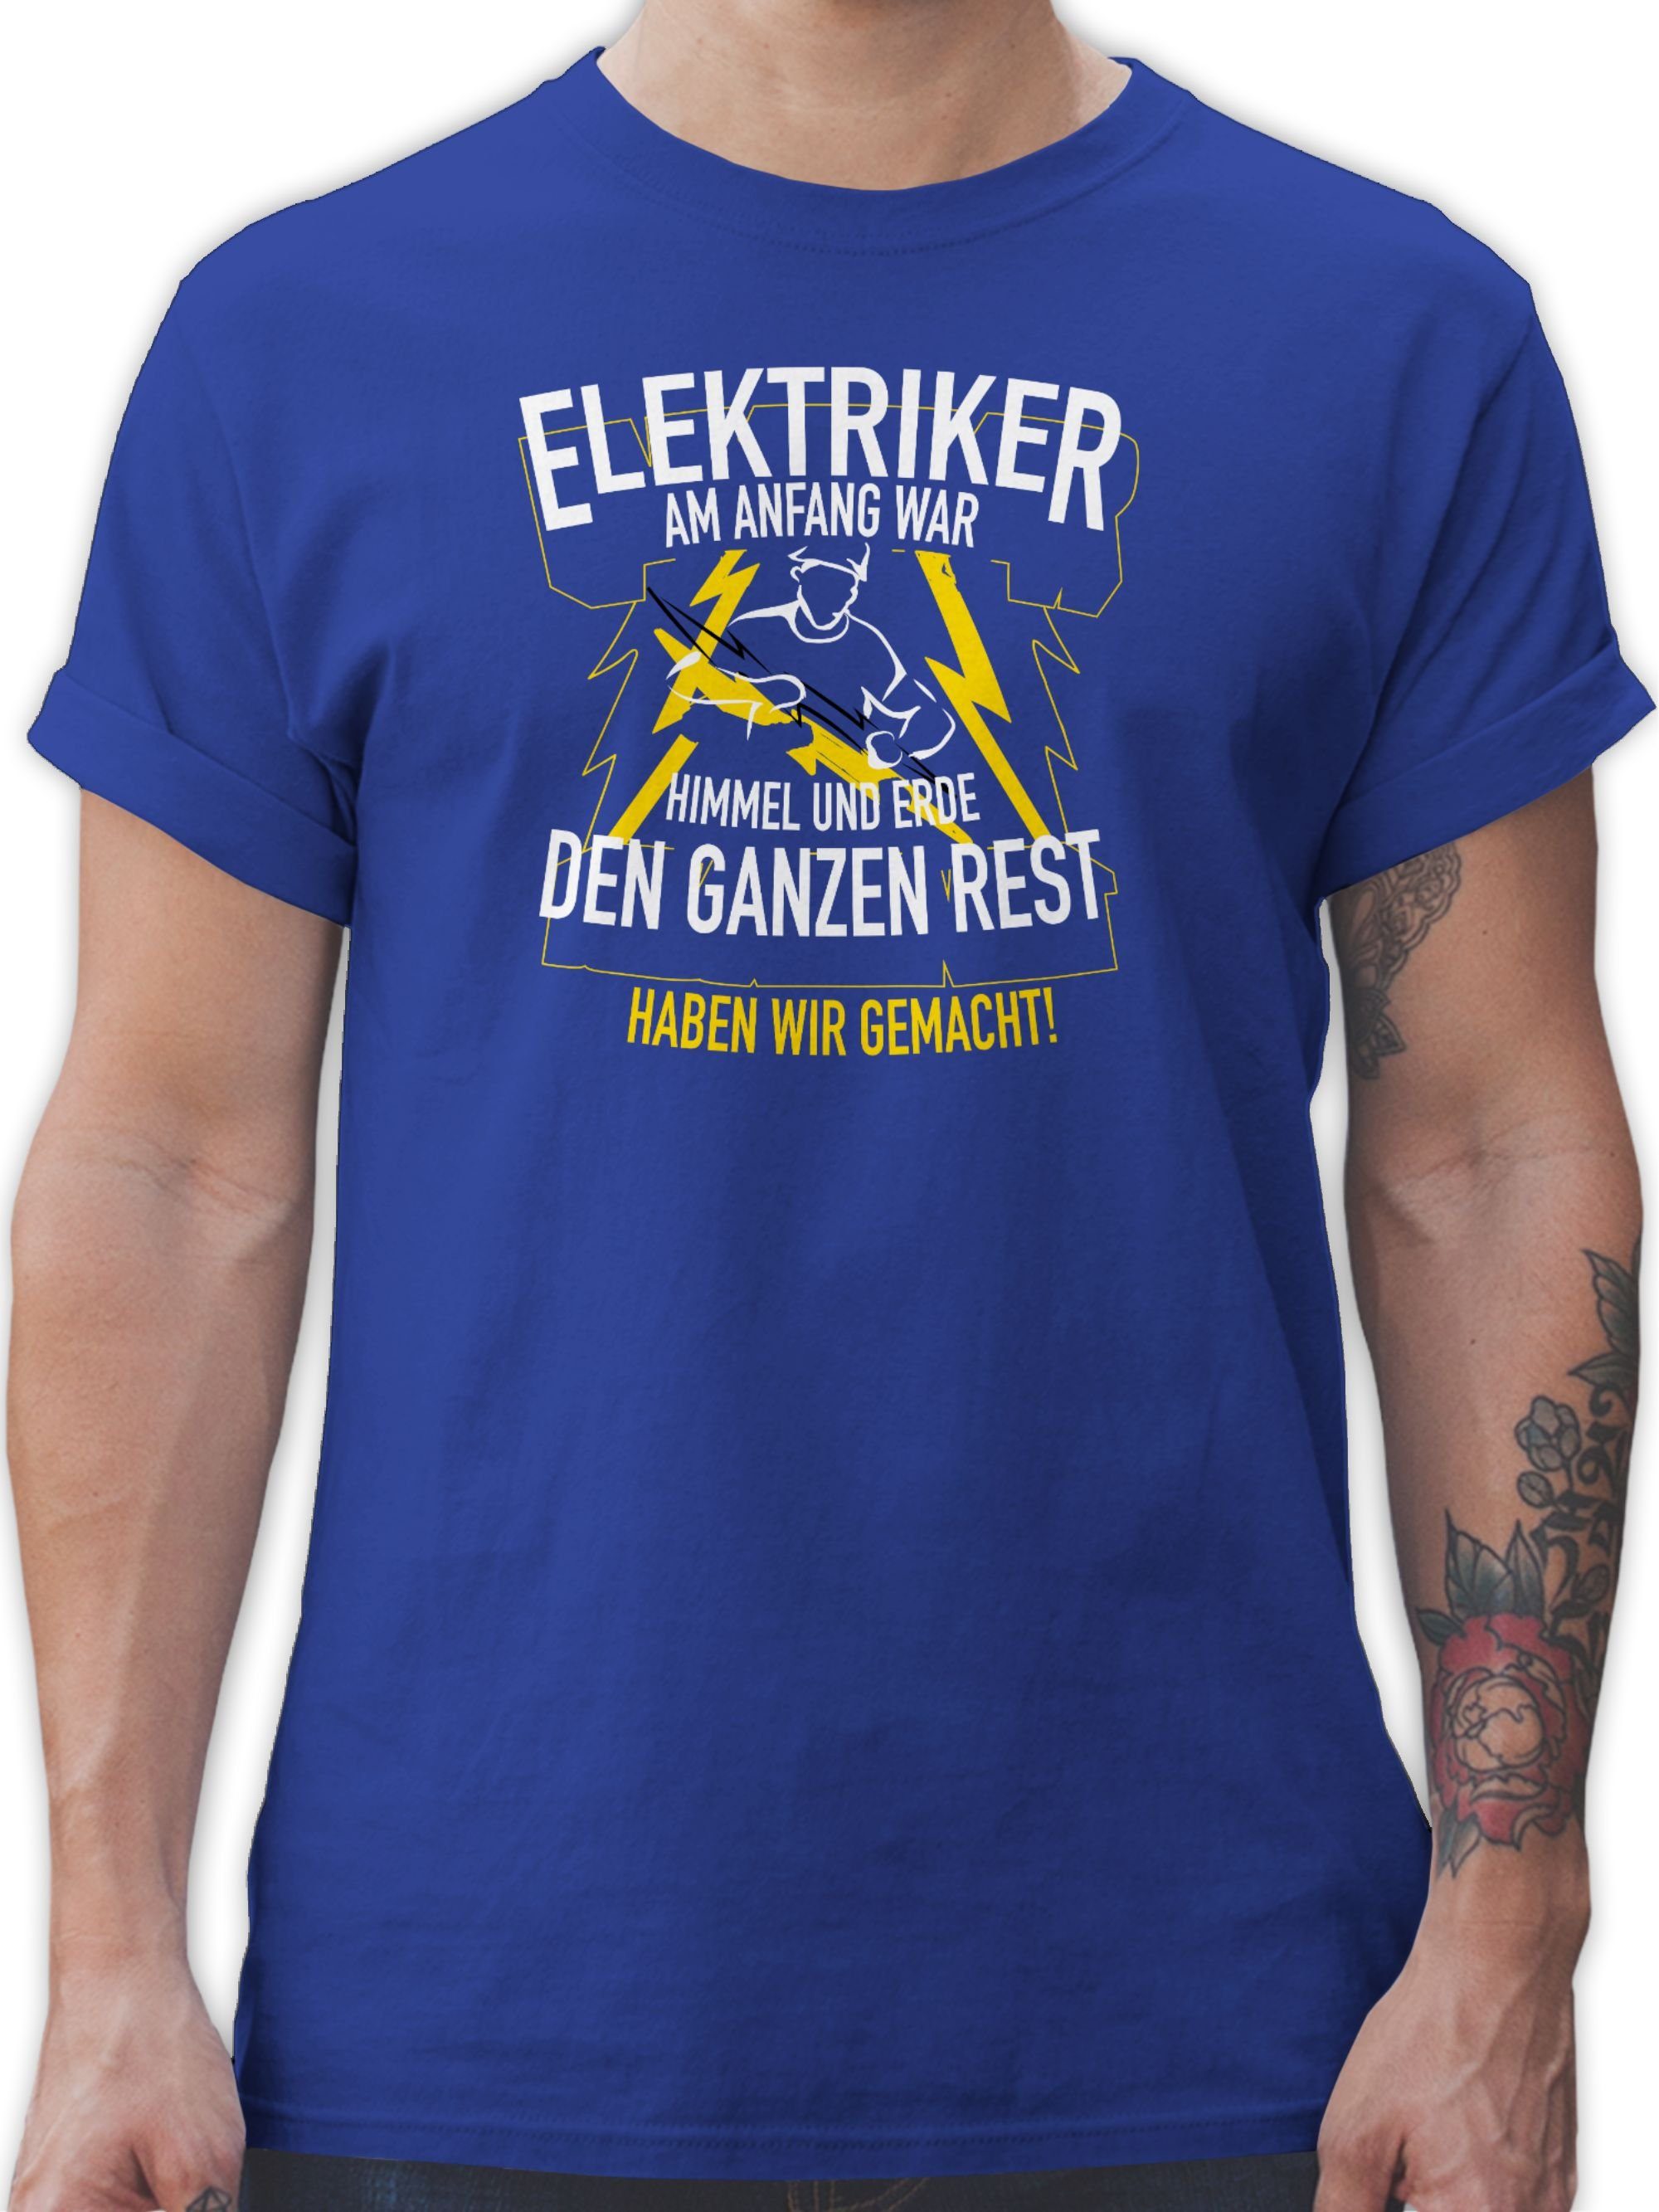 Royalblau Geschenke T-Shirt Himmel Anfang war Elektriker, Shirtracer Erde 2 Handwerker am und